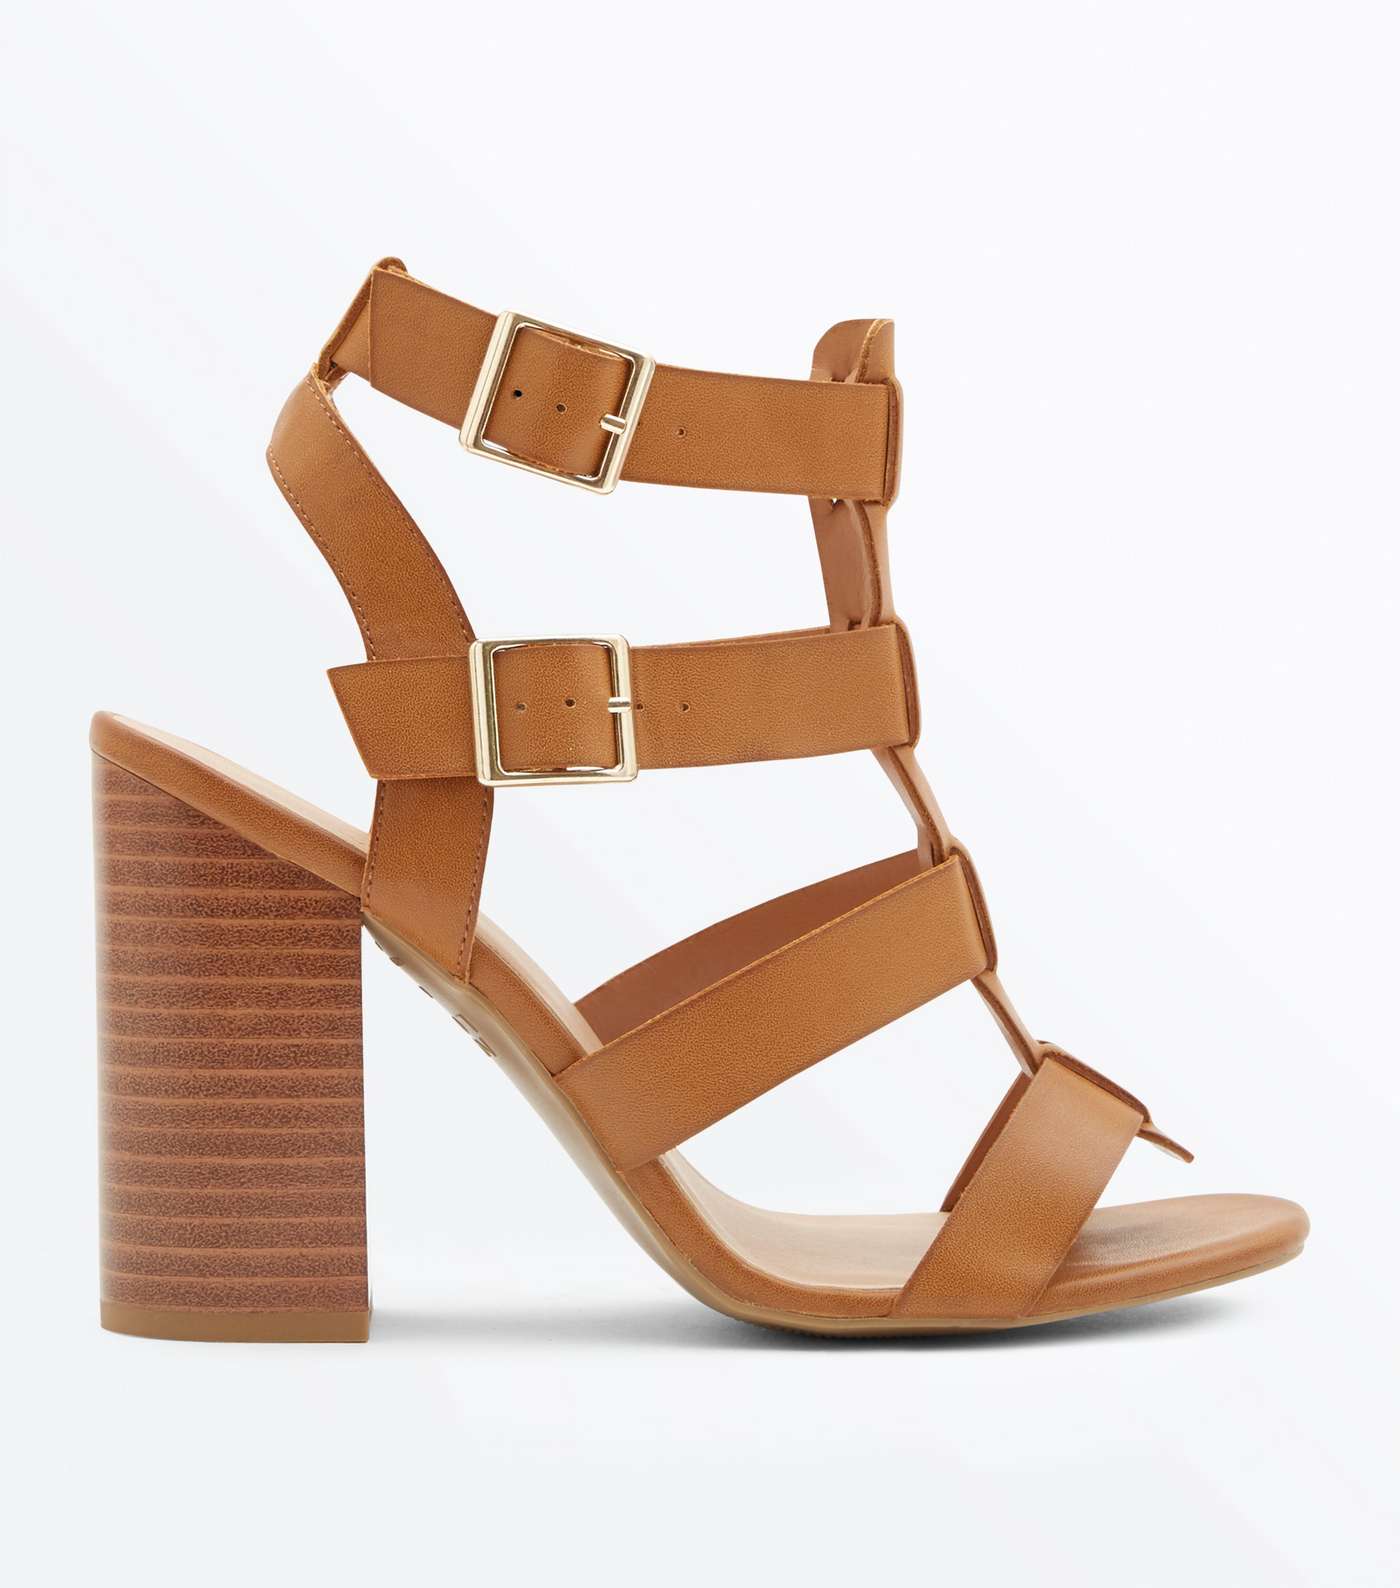 Tan Wooden Block Heel Gladiator Sandals